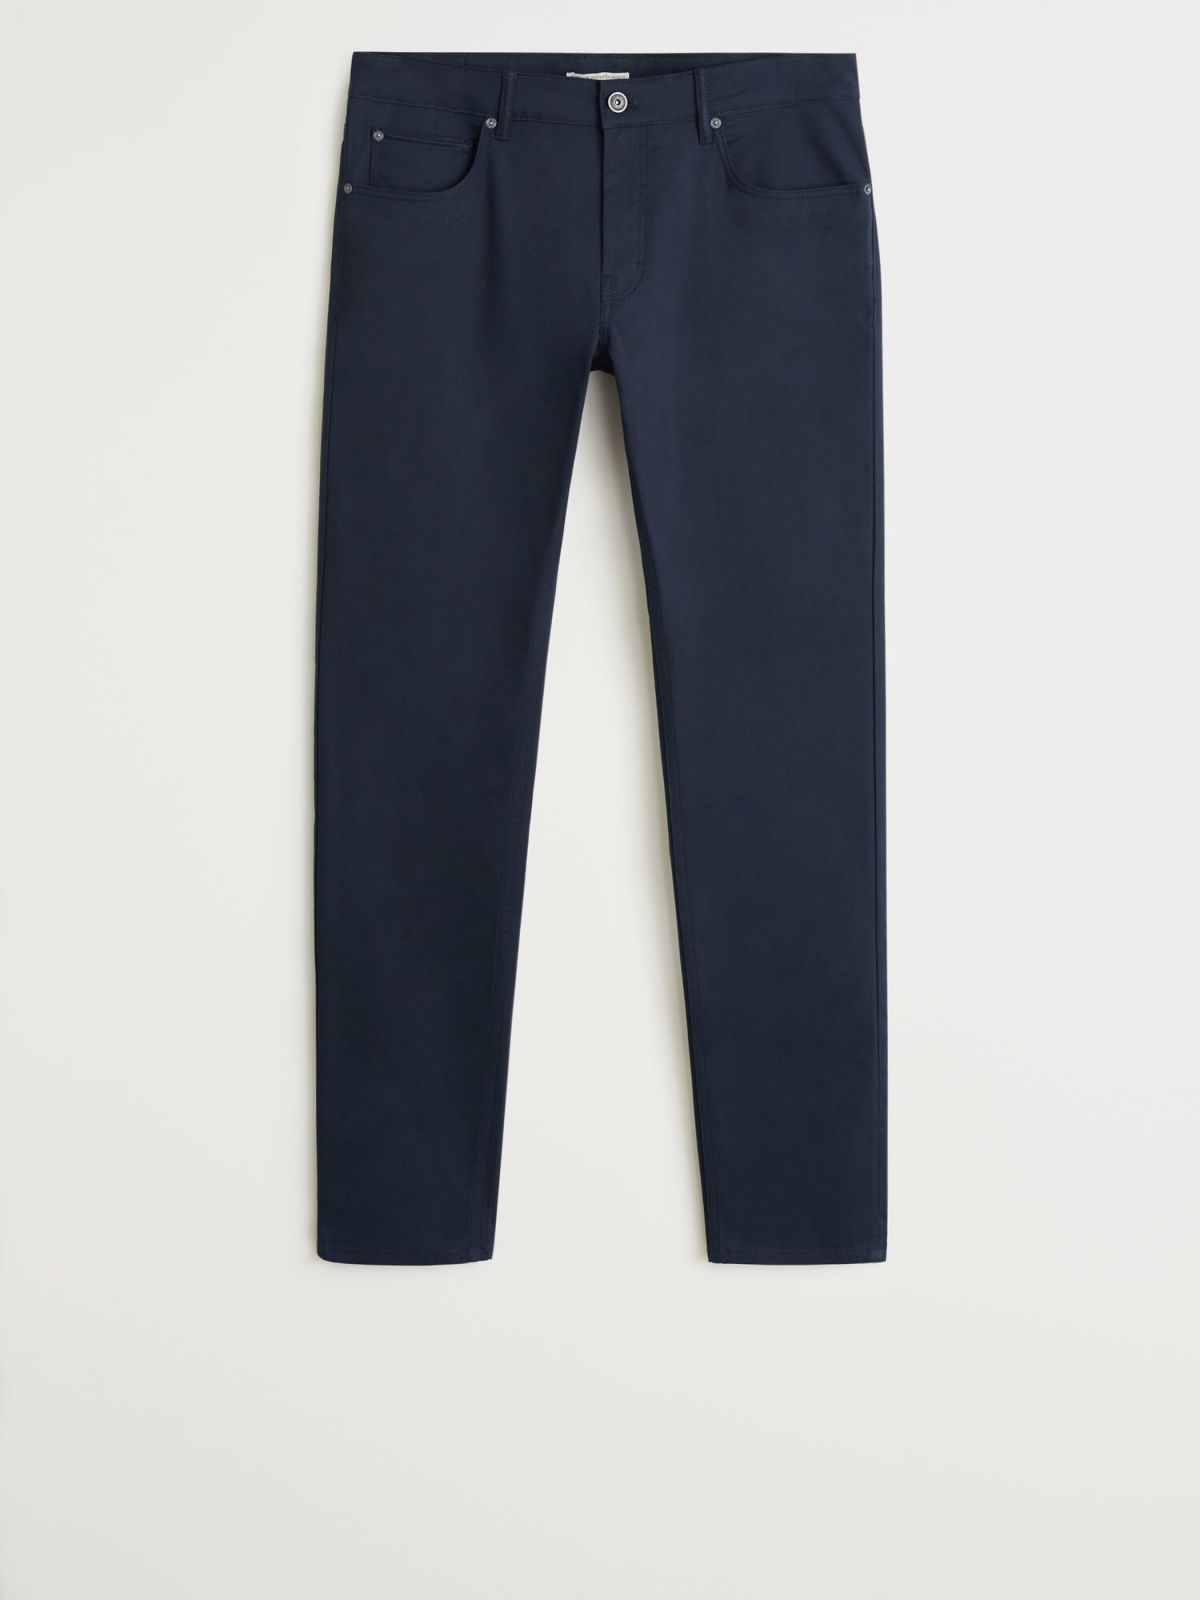  מכנסיים דמוי ג'ינס בגזרת Slim fit של MANGO